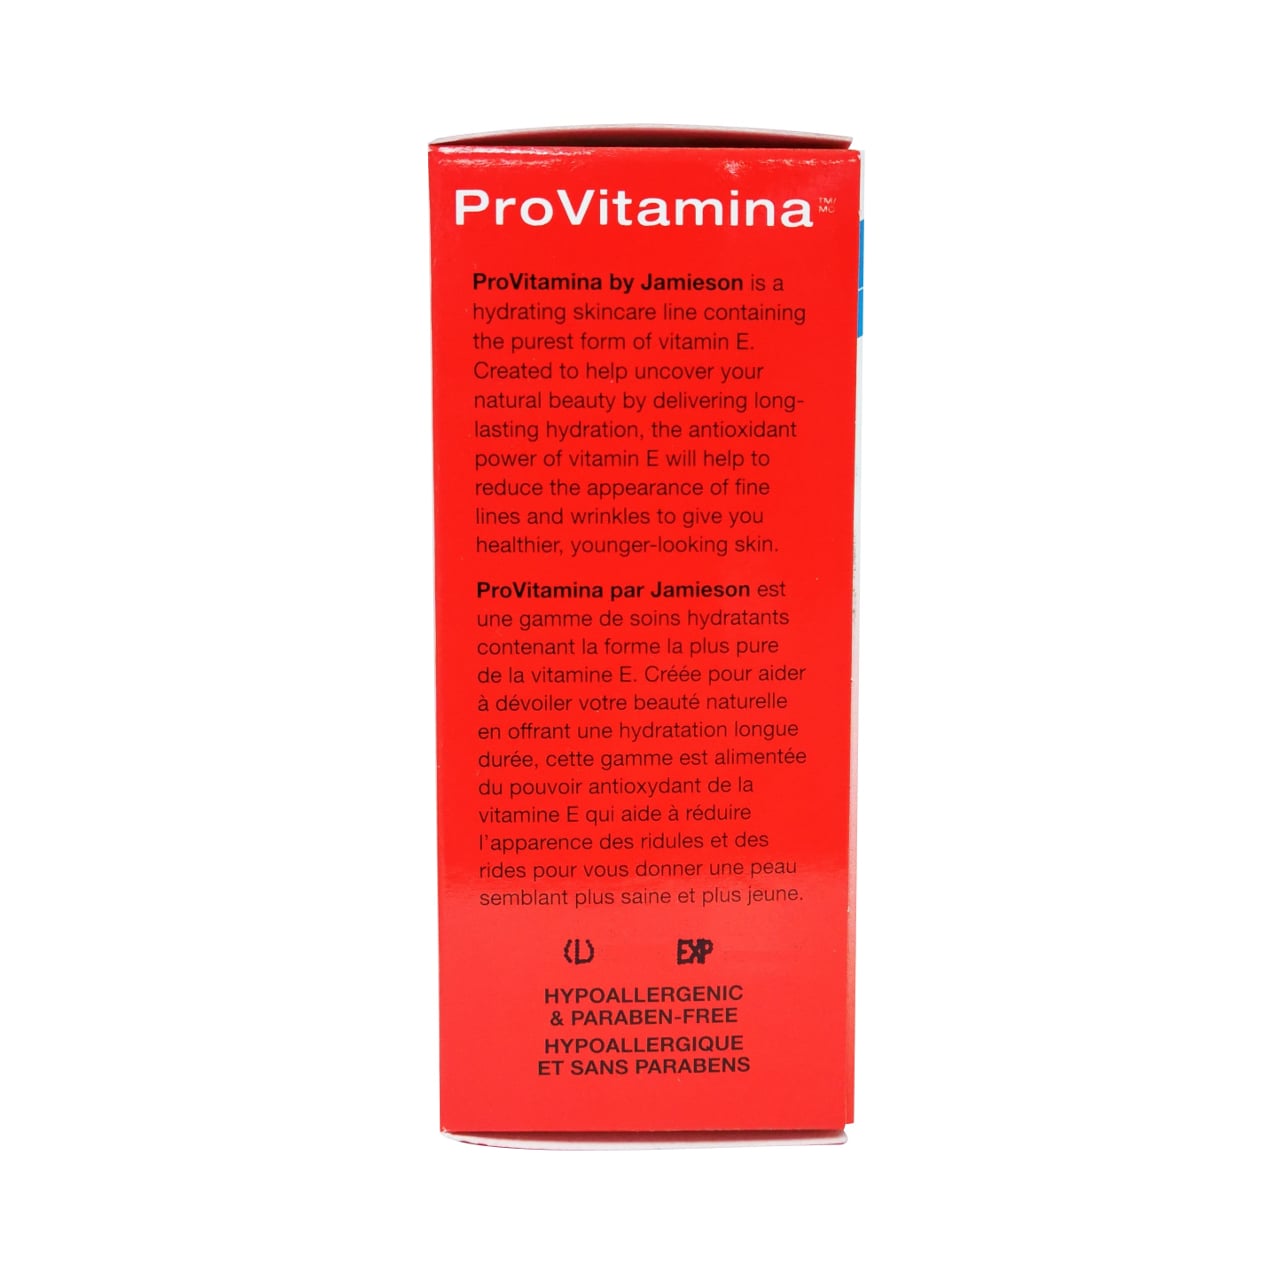 Product description for Jamieson ProVitamina Vitamin E Oil 100% Pure in French and English